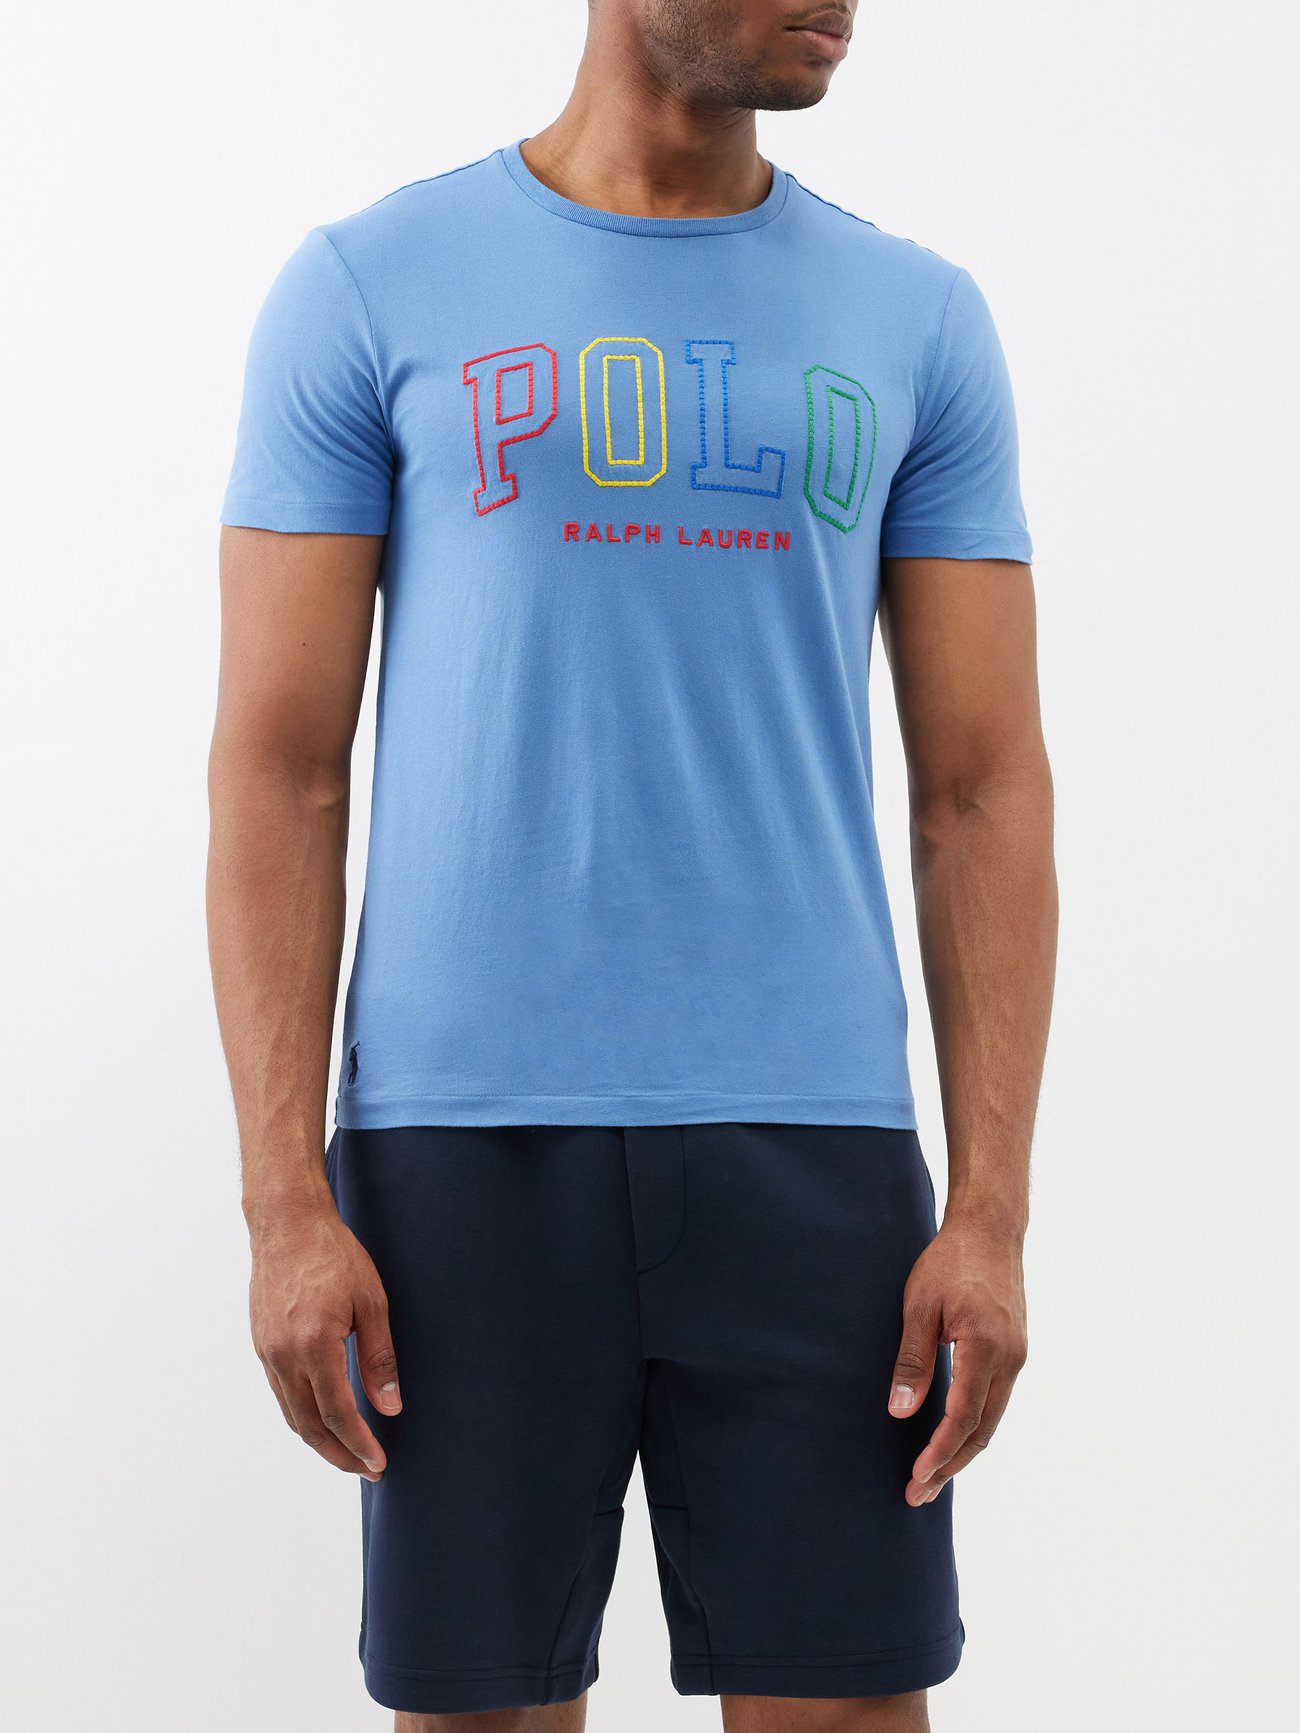 Polo Ralph Lauren Logo-Embroidered Appliquéd Cotton-Jersey T-Shirt - Men - Navy T-shirts - XL